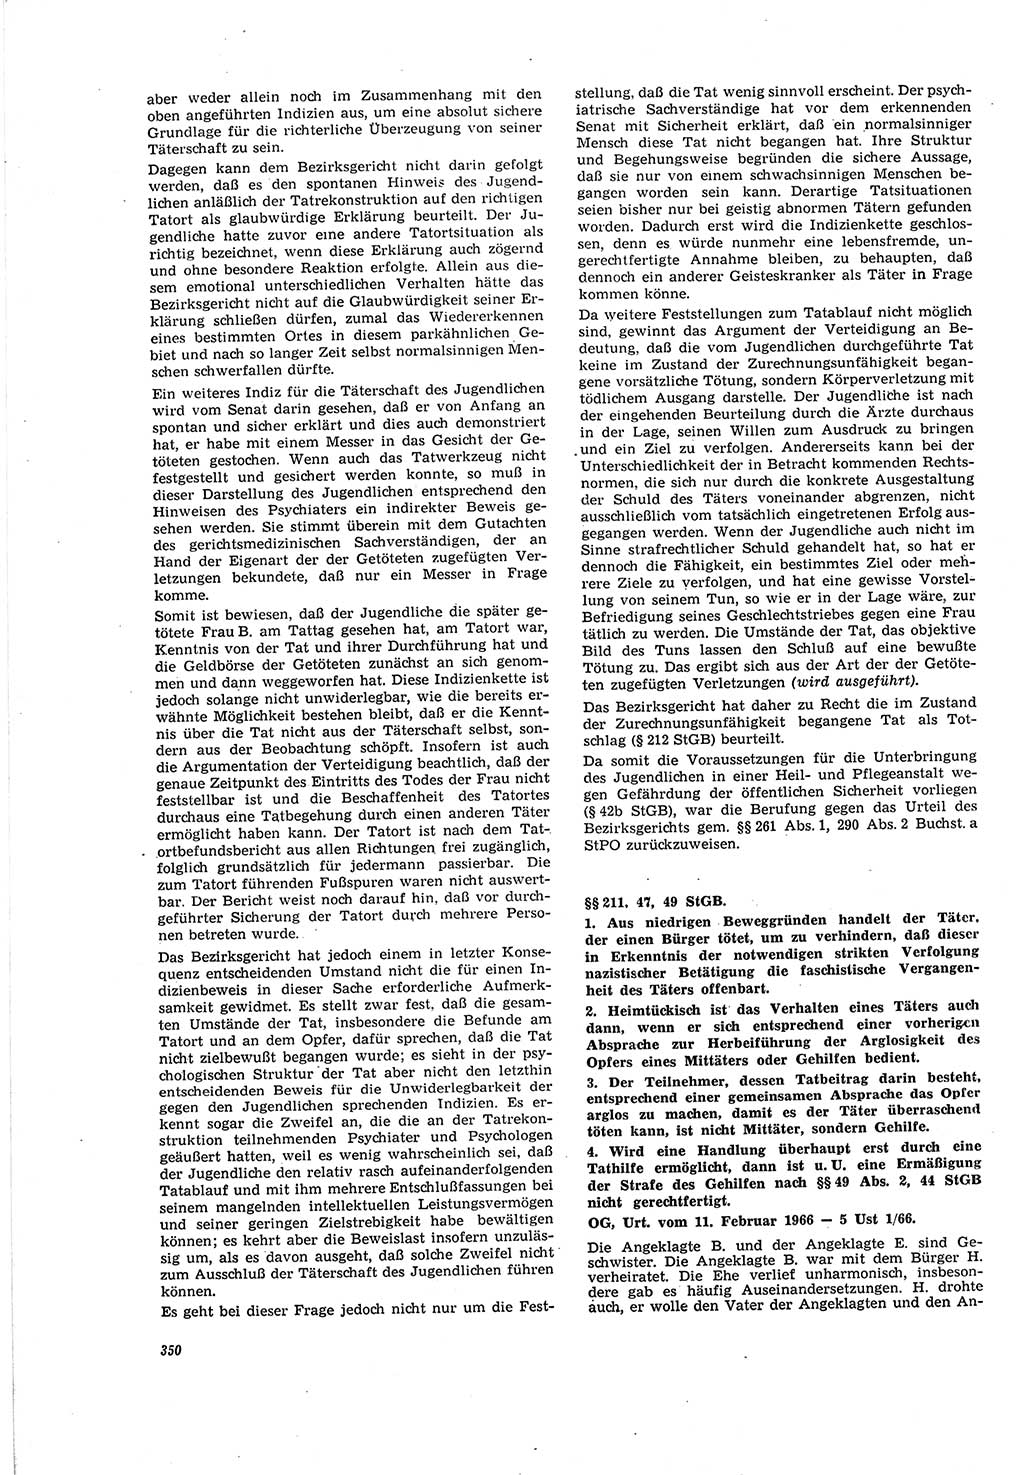 Neue Justiz (NJ), Zeitschrift für Recht und Rechtswissenschaft [Deutsche Demokratische Republik (DDR)], 20. Jahrgang 1966, Seite 350 (NJ DDR 1966, S. 350)